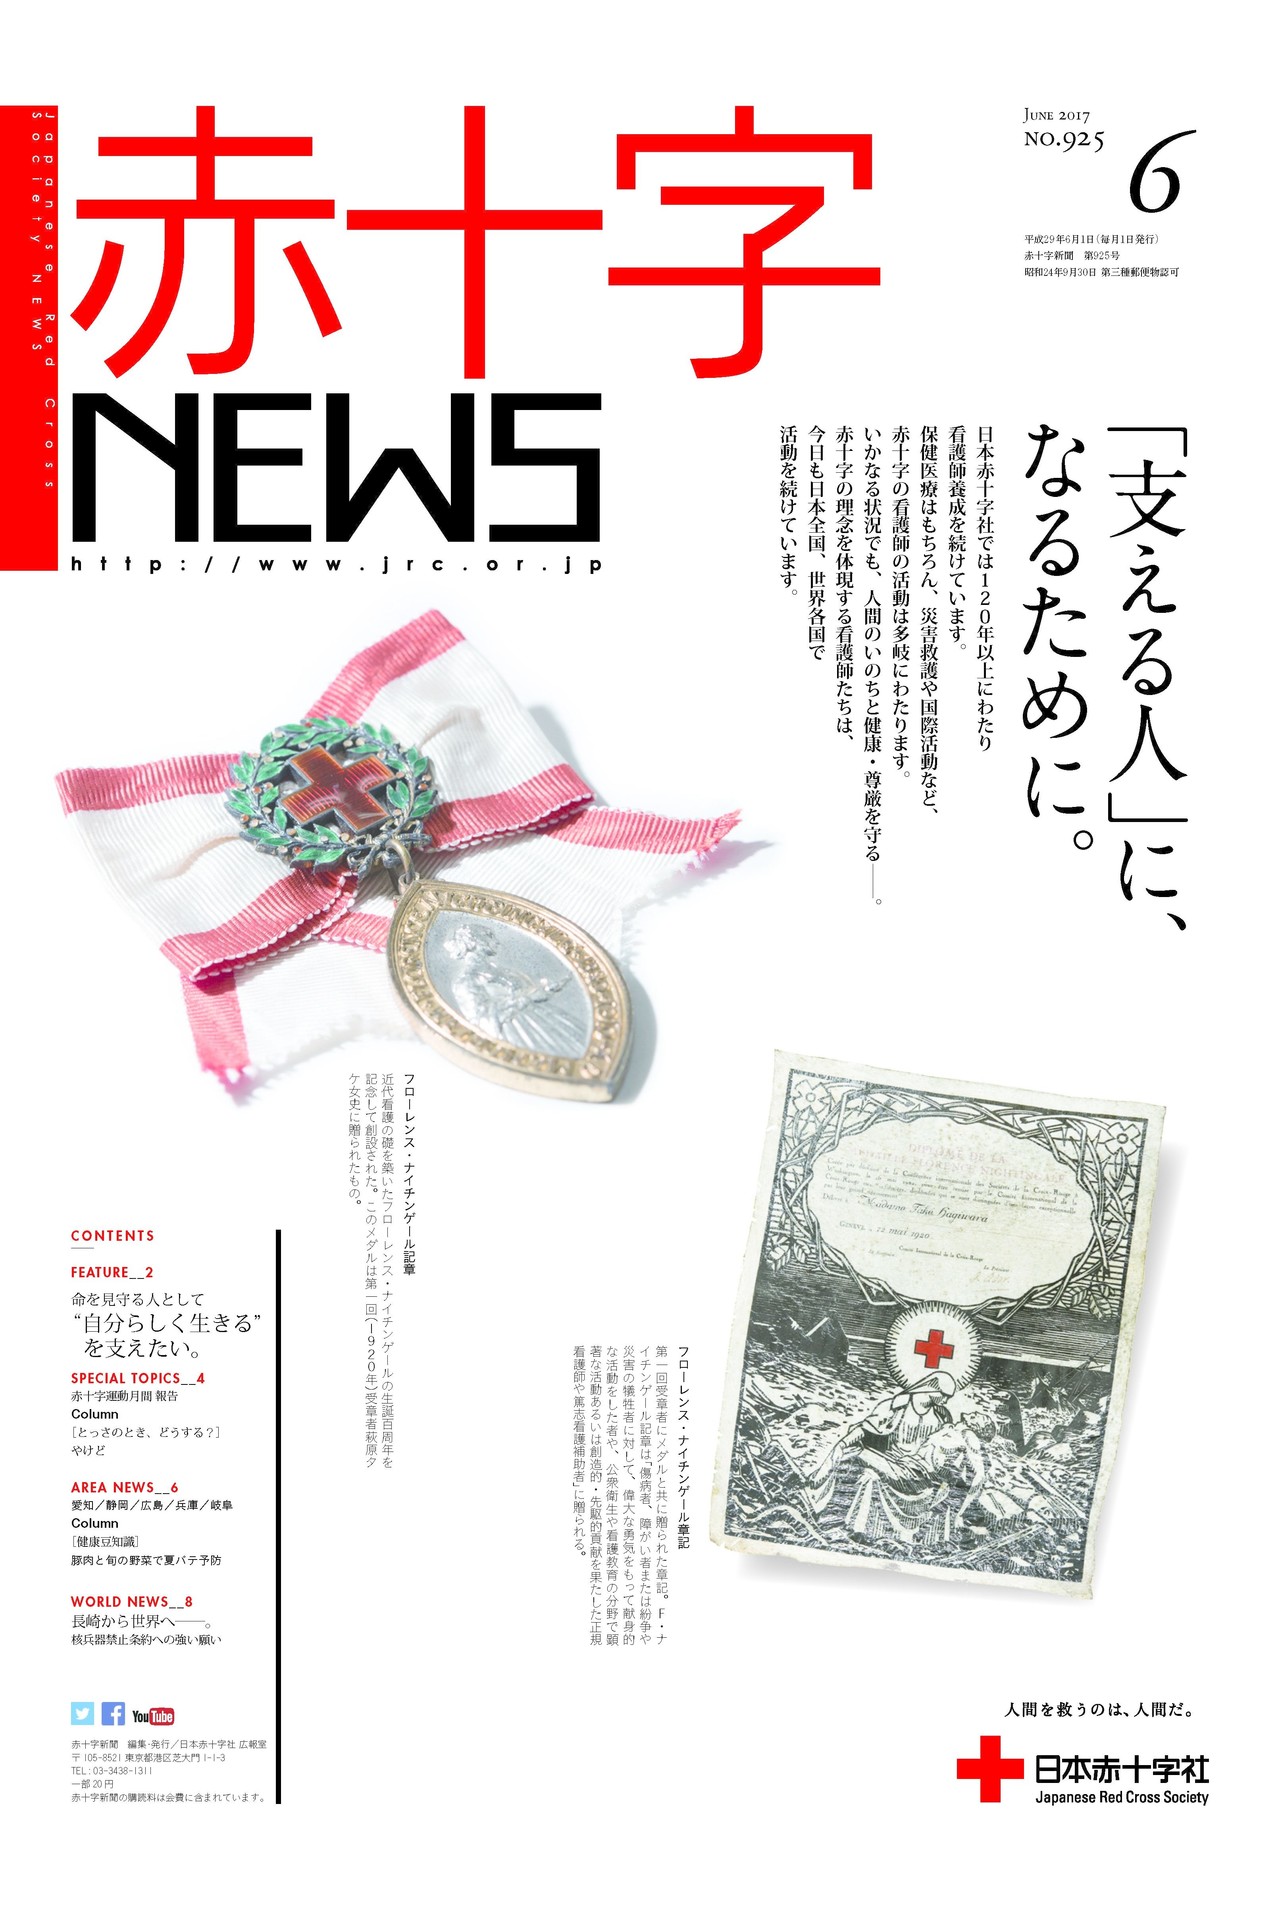 番外編 広報紙を語る 12 日本赤十字社 Nobuhide Nagai Creative Director Note